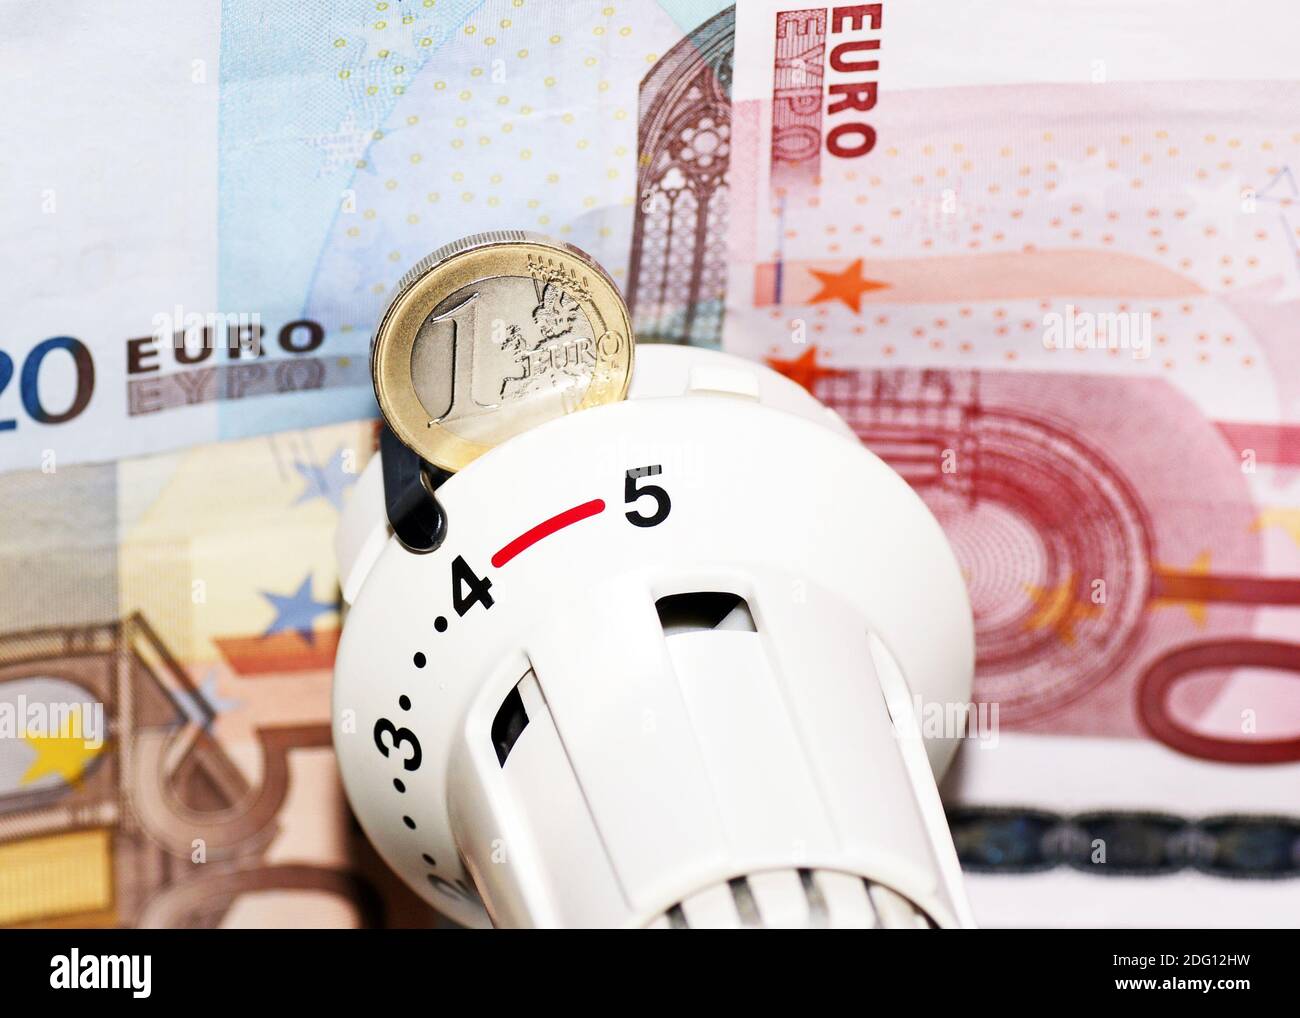 Chauffage et euros / coûts Banque D'Images